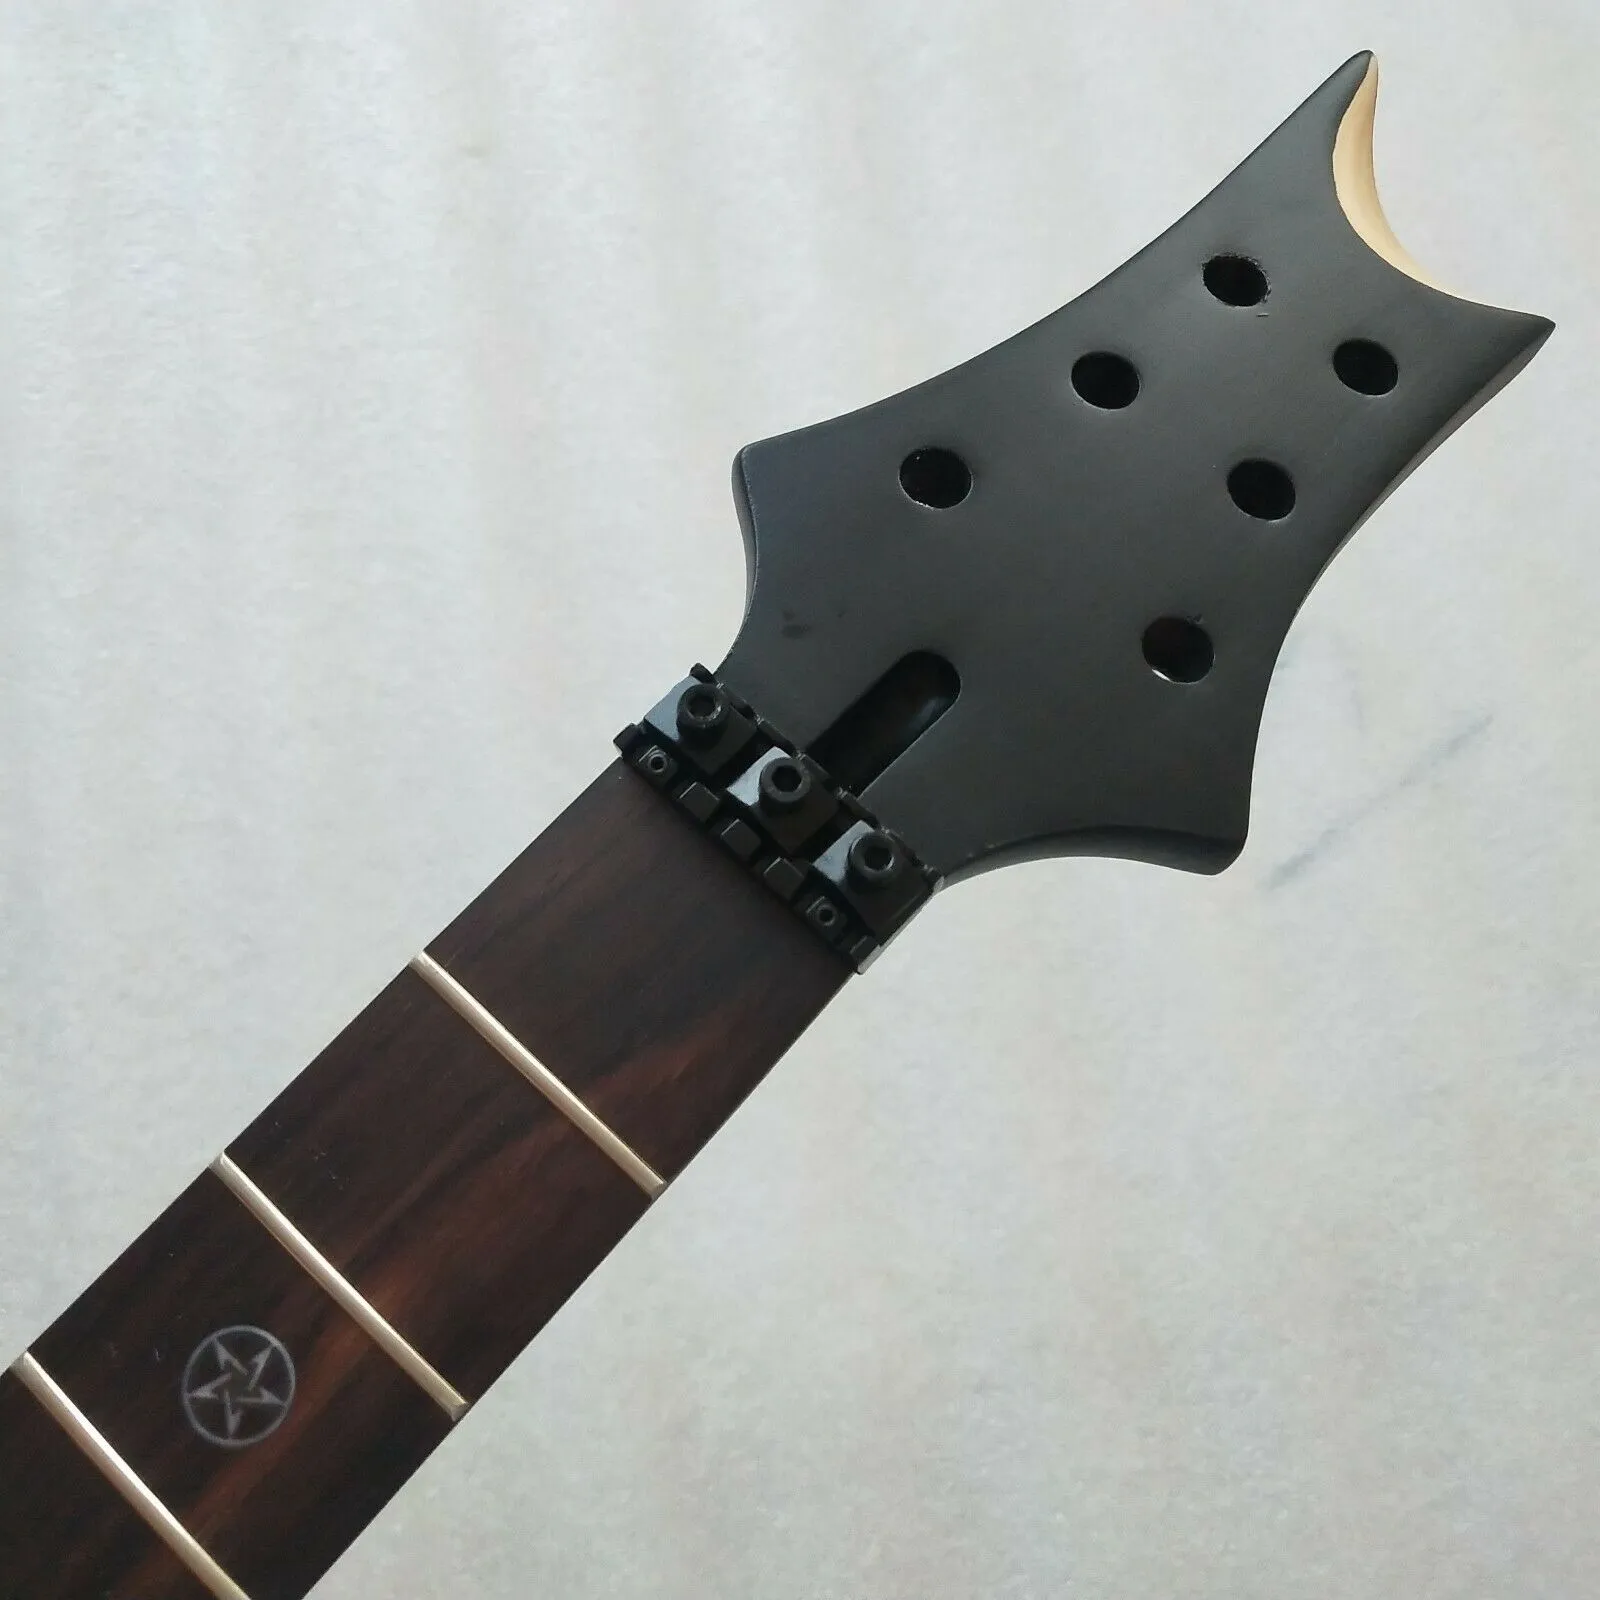 DIY 블랙 기타 목 24 프렛 25.5 "메이플 로즈 우드 프렛 보드 인레이 잠금 너트